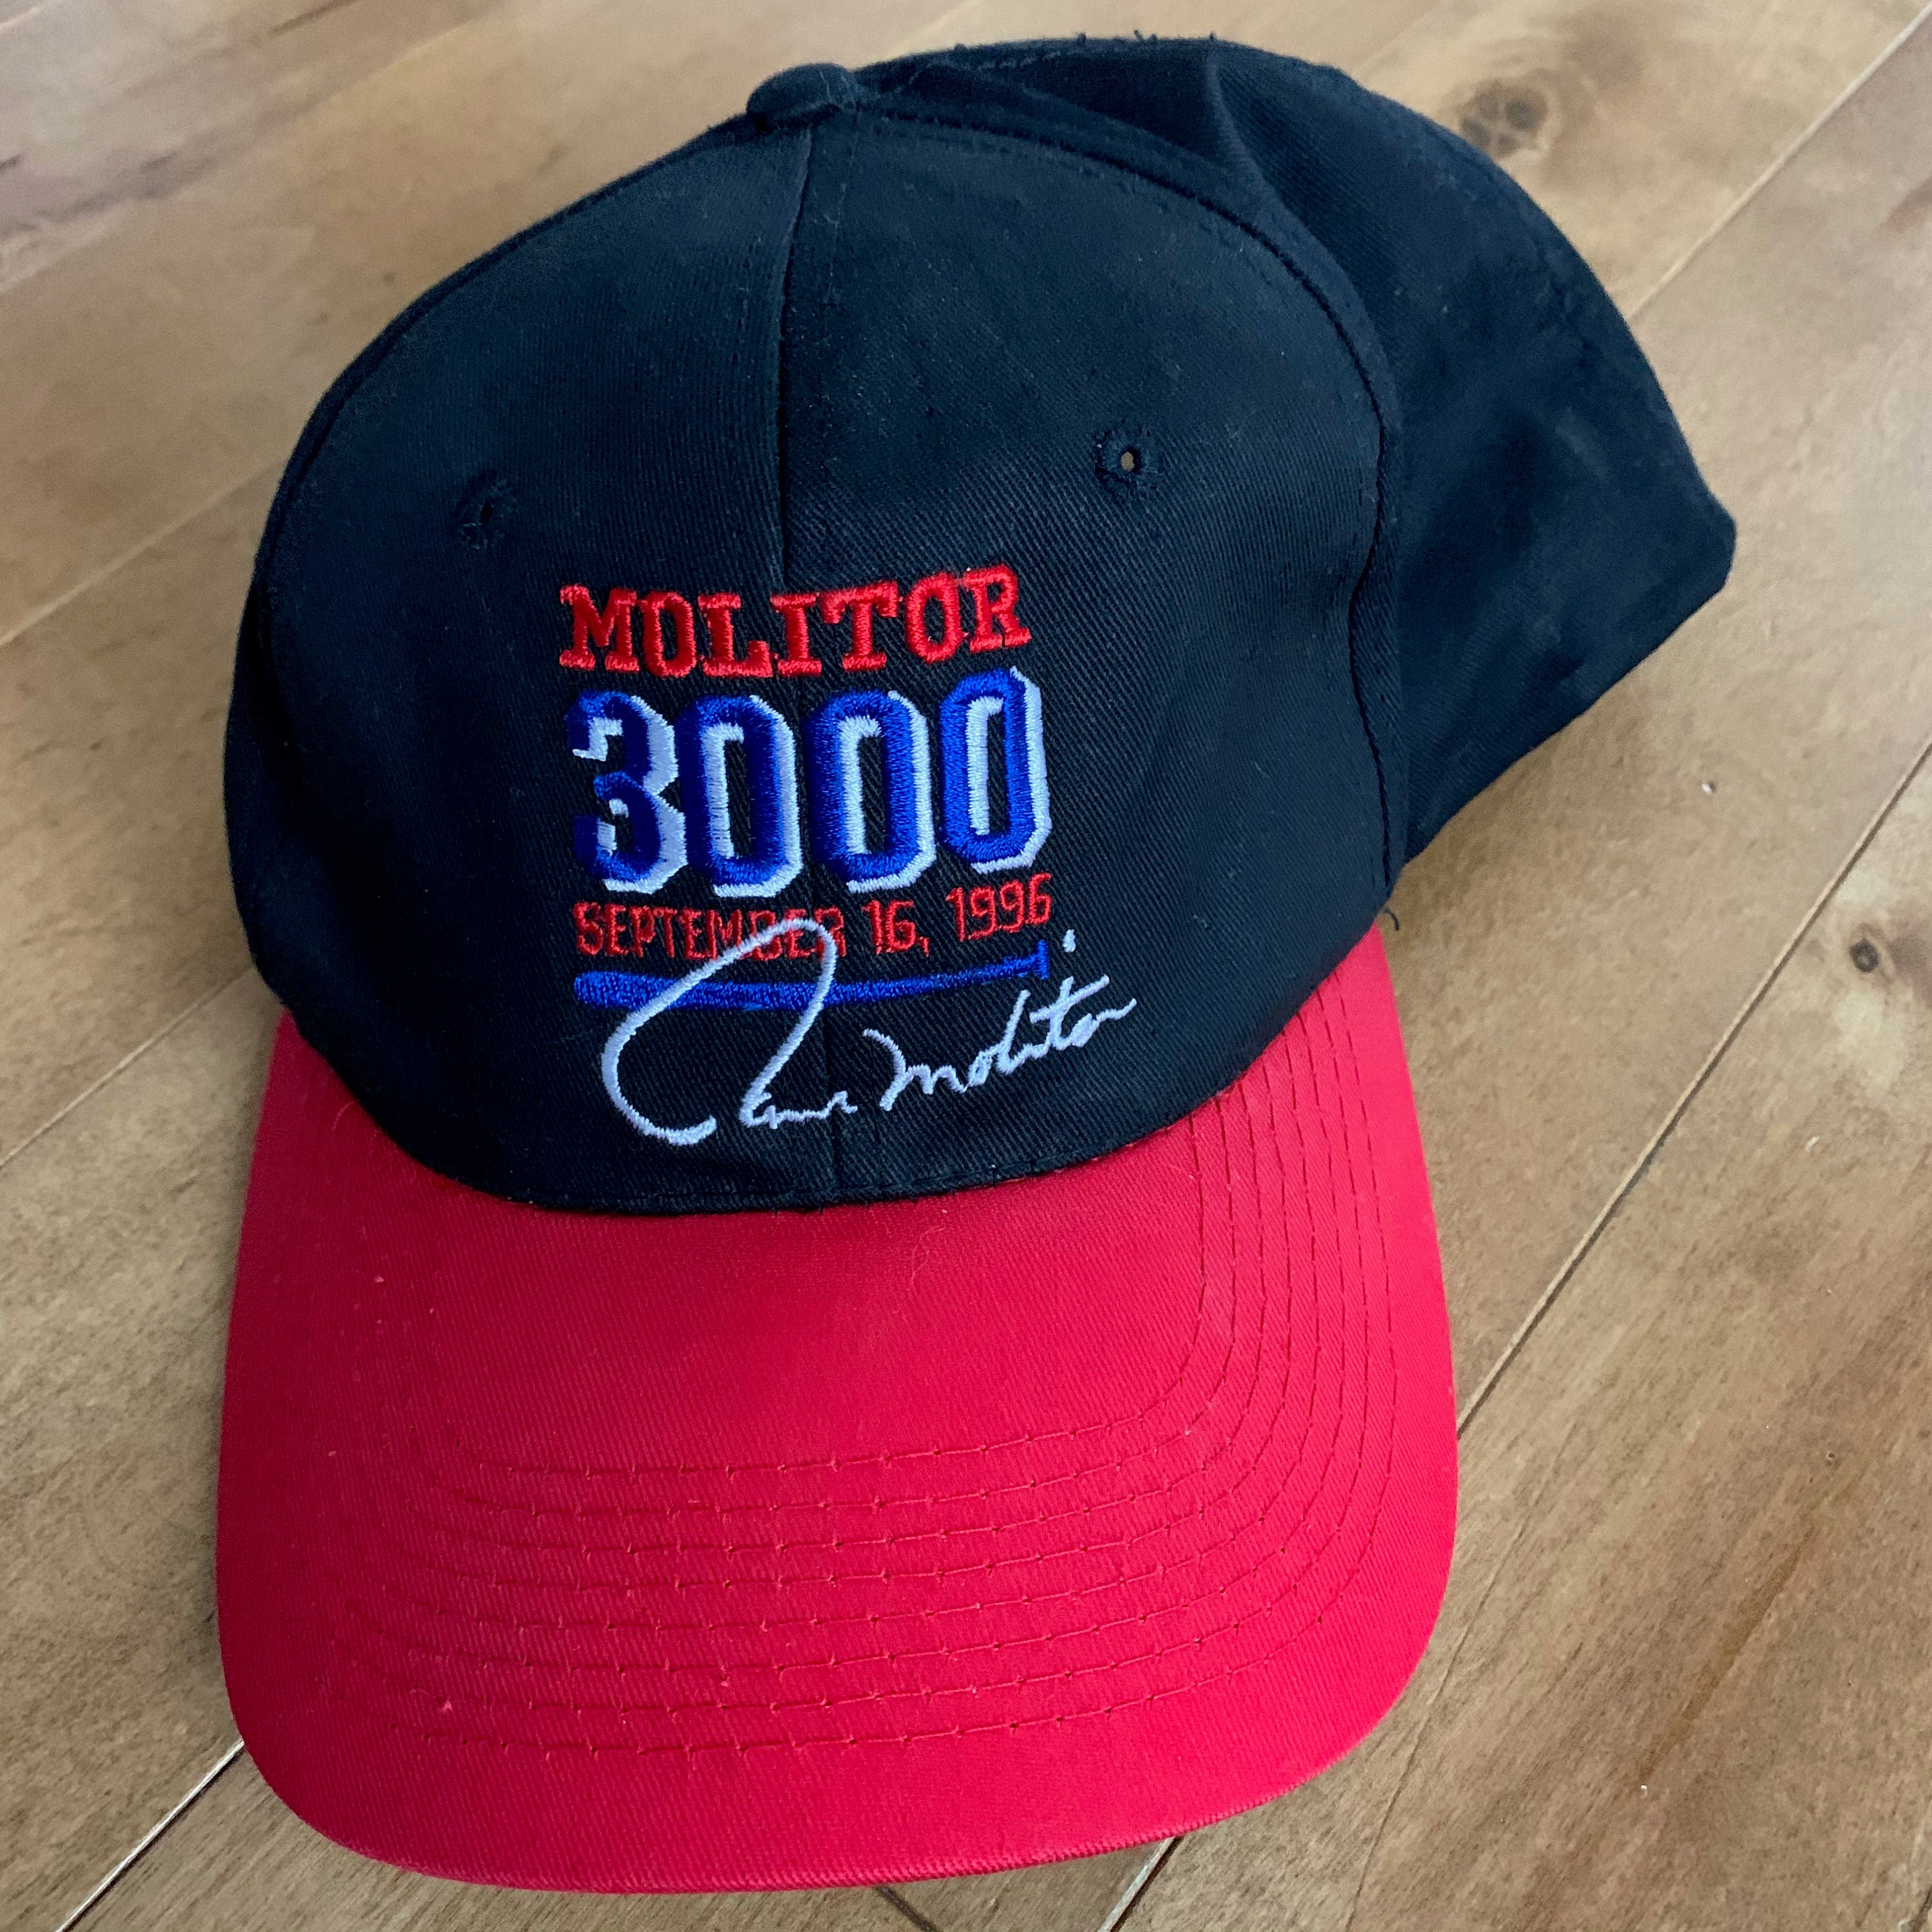 1996 Paul Molitor Signature Hat 3000 Hits Celebration | Etsy